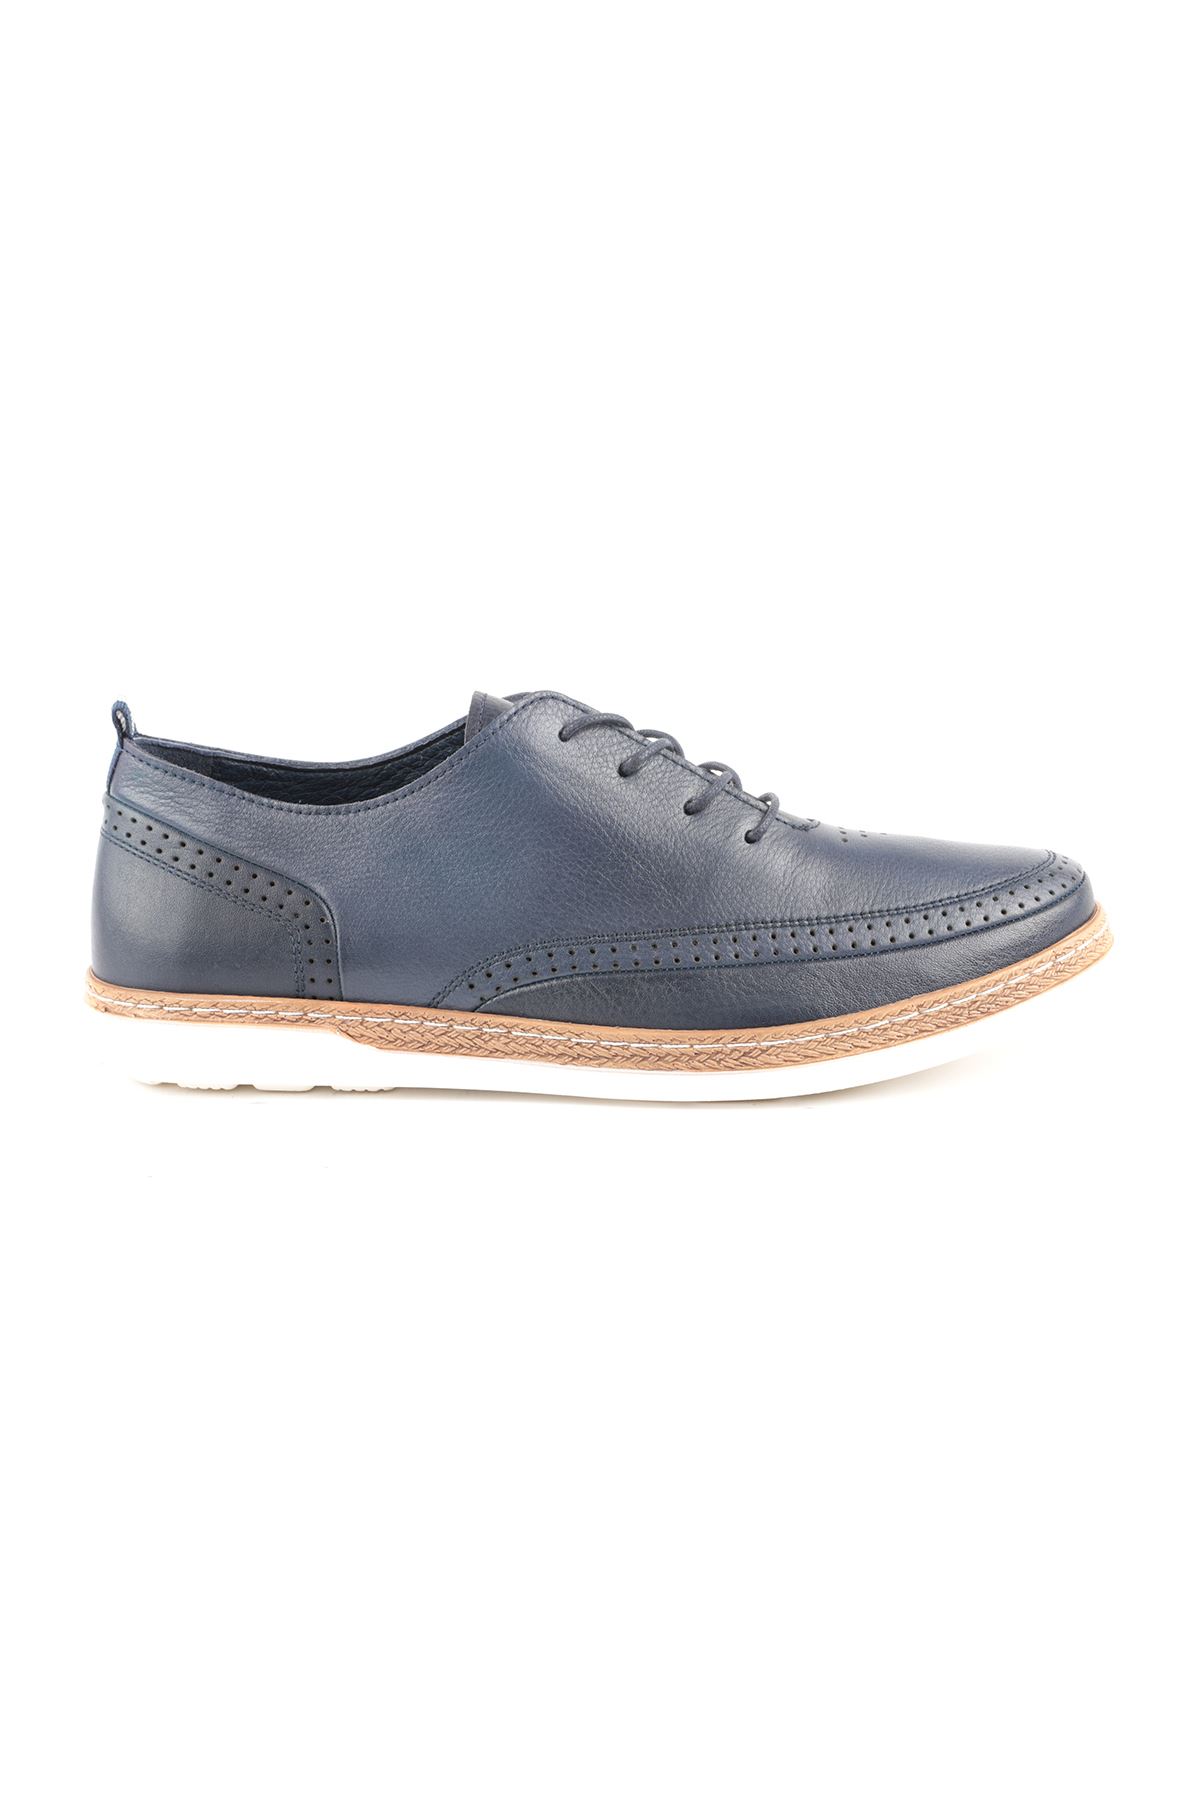 Libero L3633 Navy Blue Men Casual Shoes